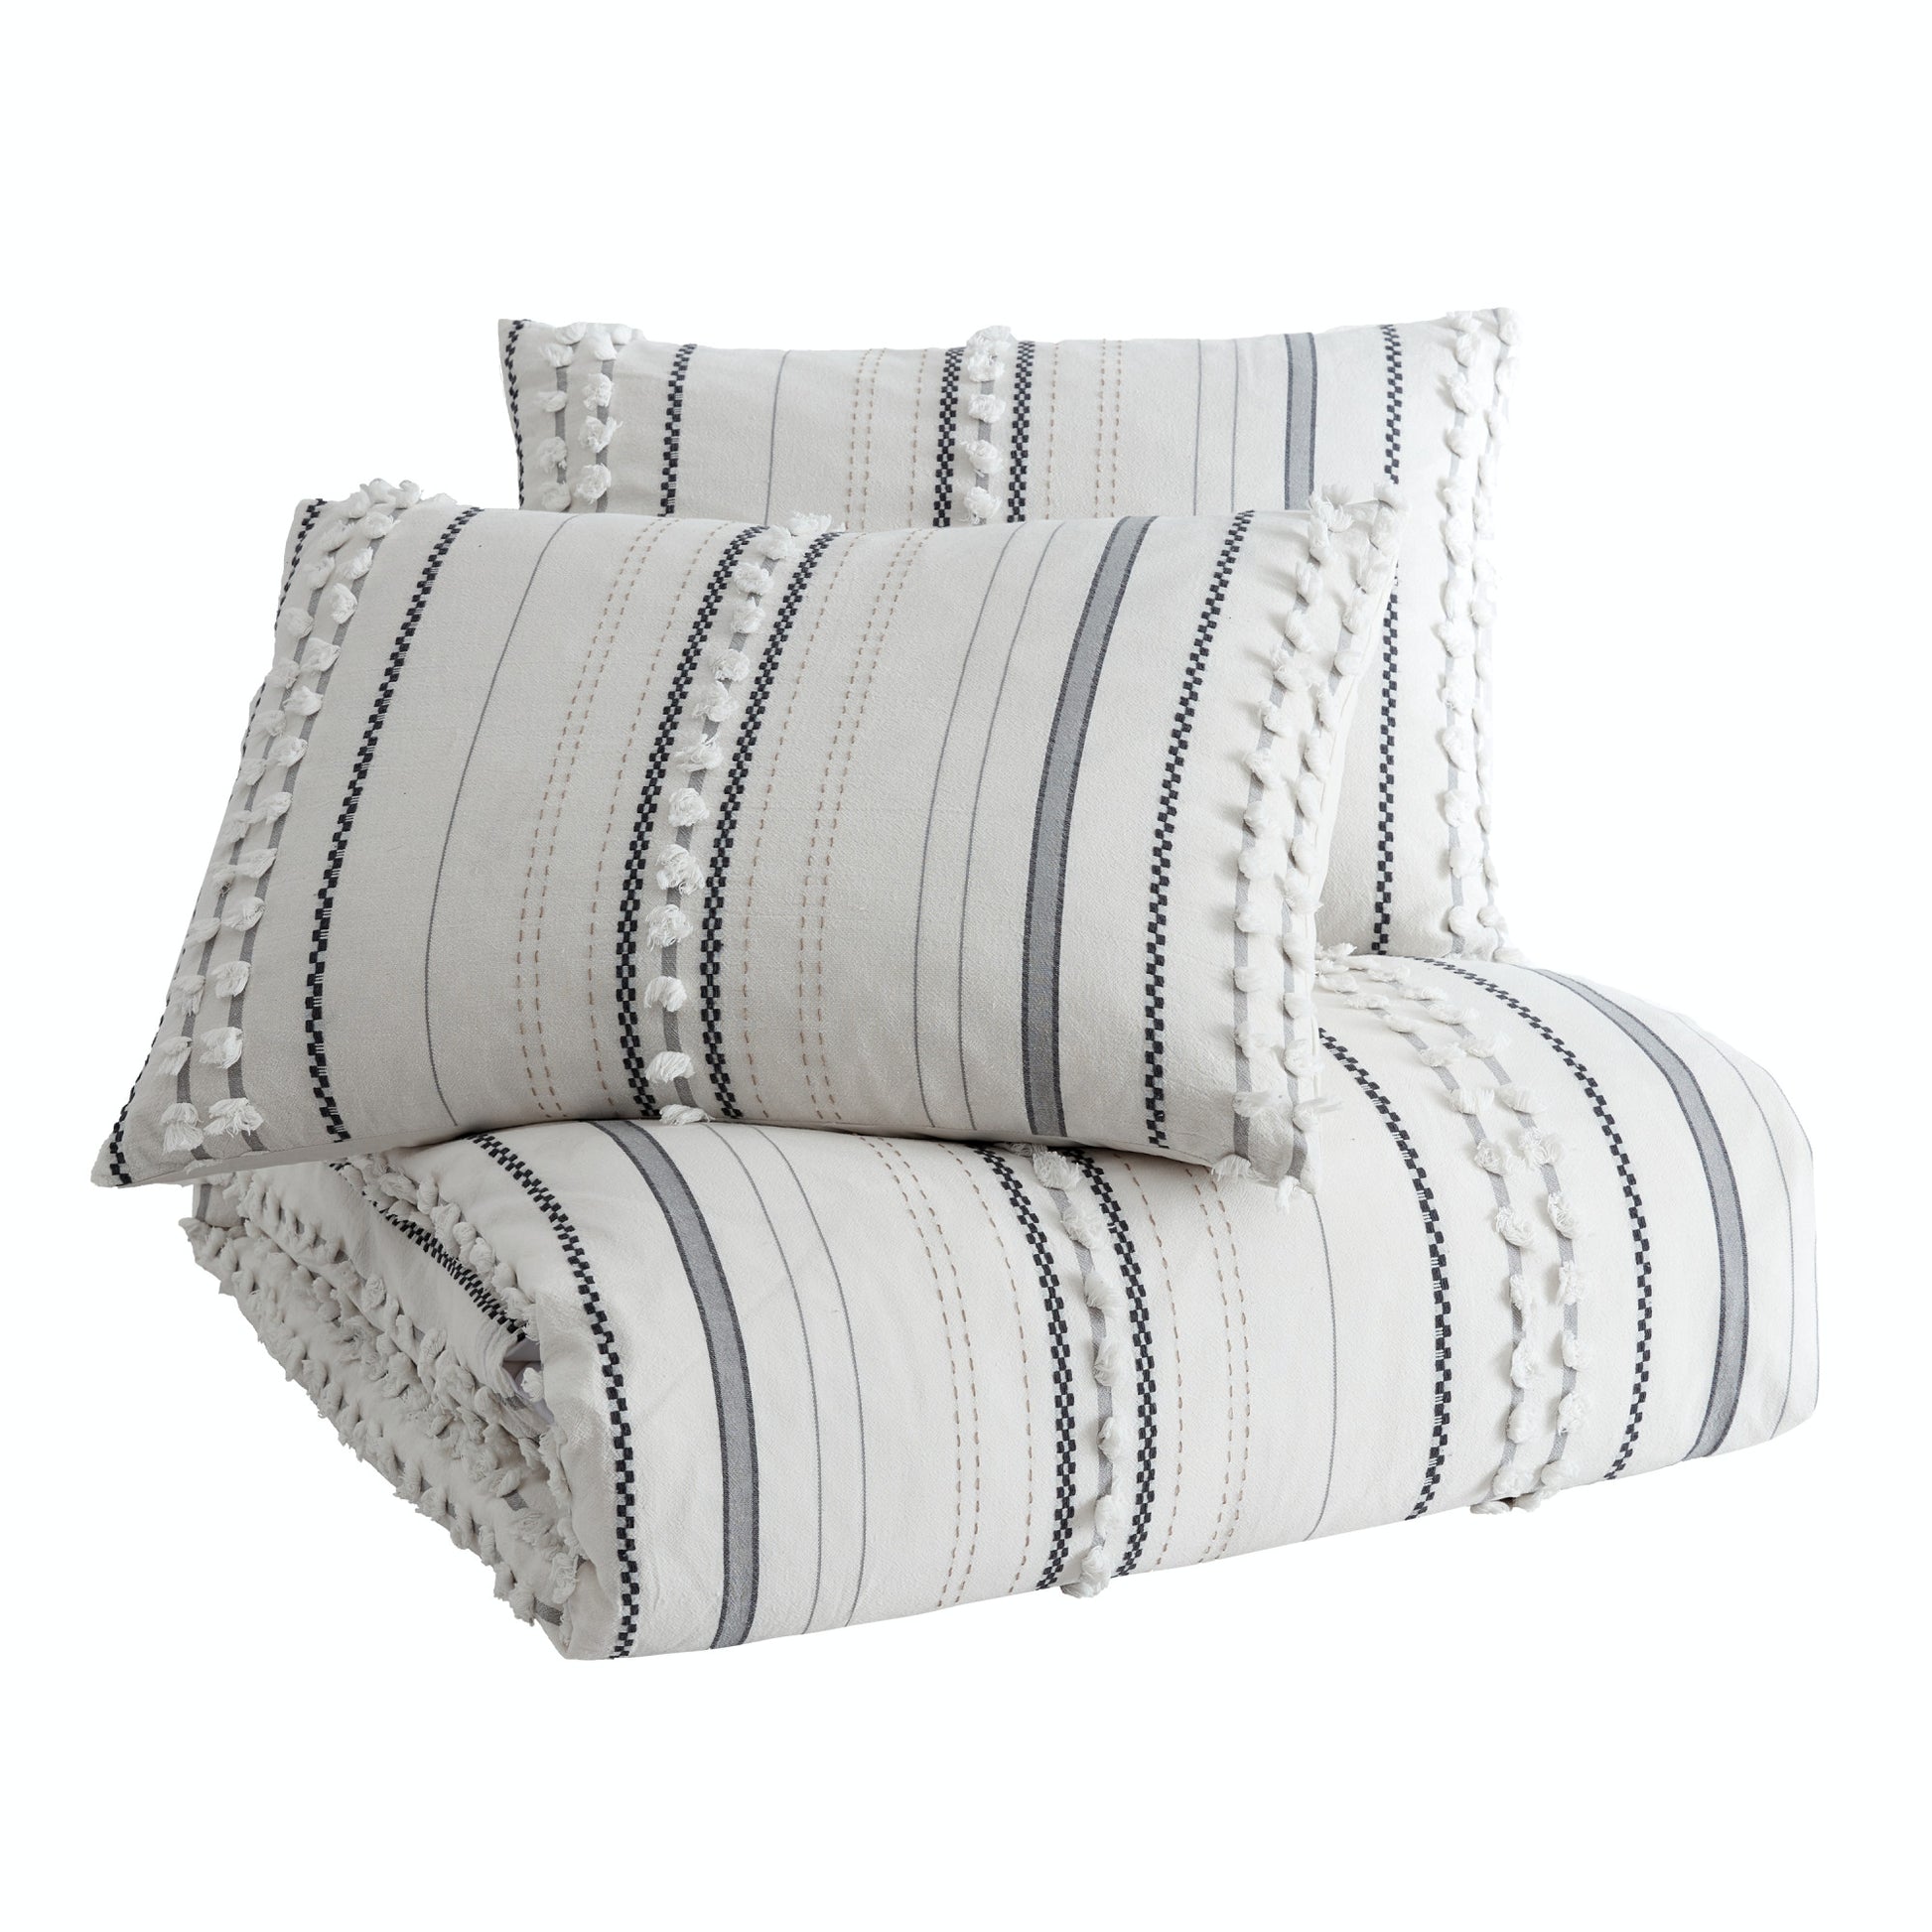 Peri Home Yarn Dyed Dot Stripe Comforter Set